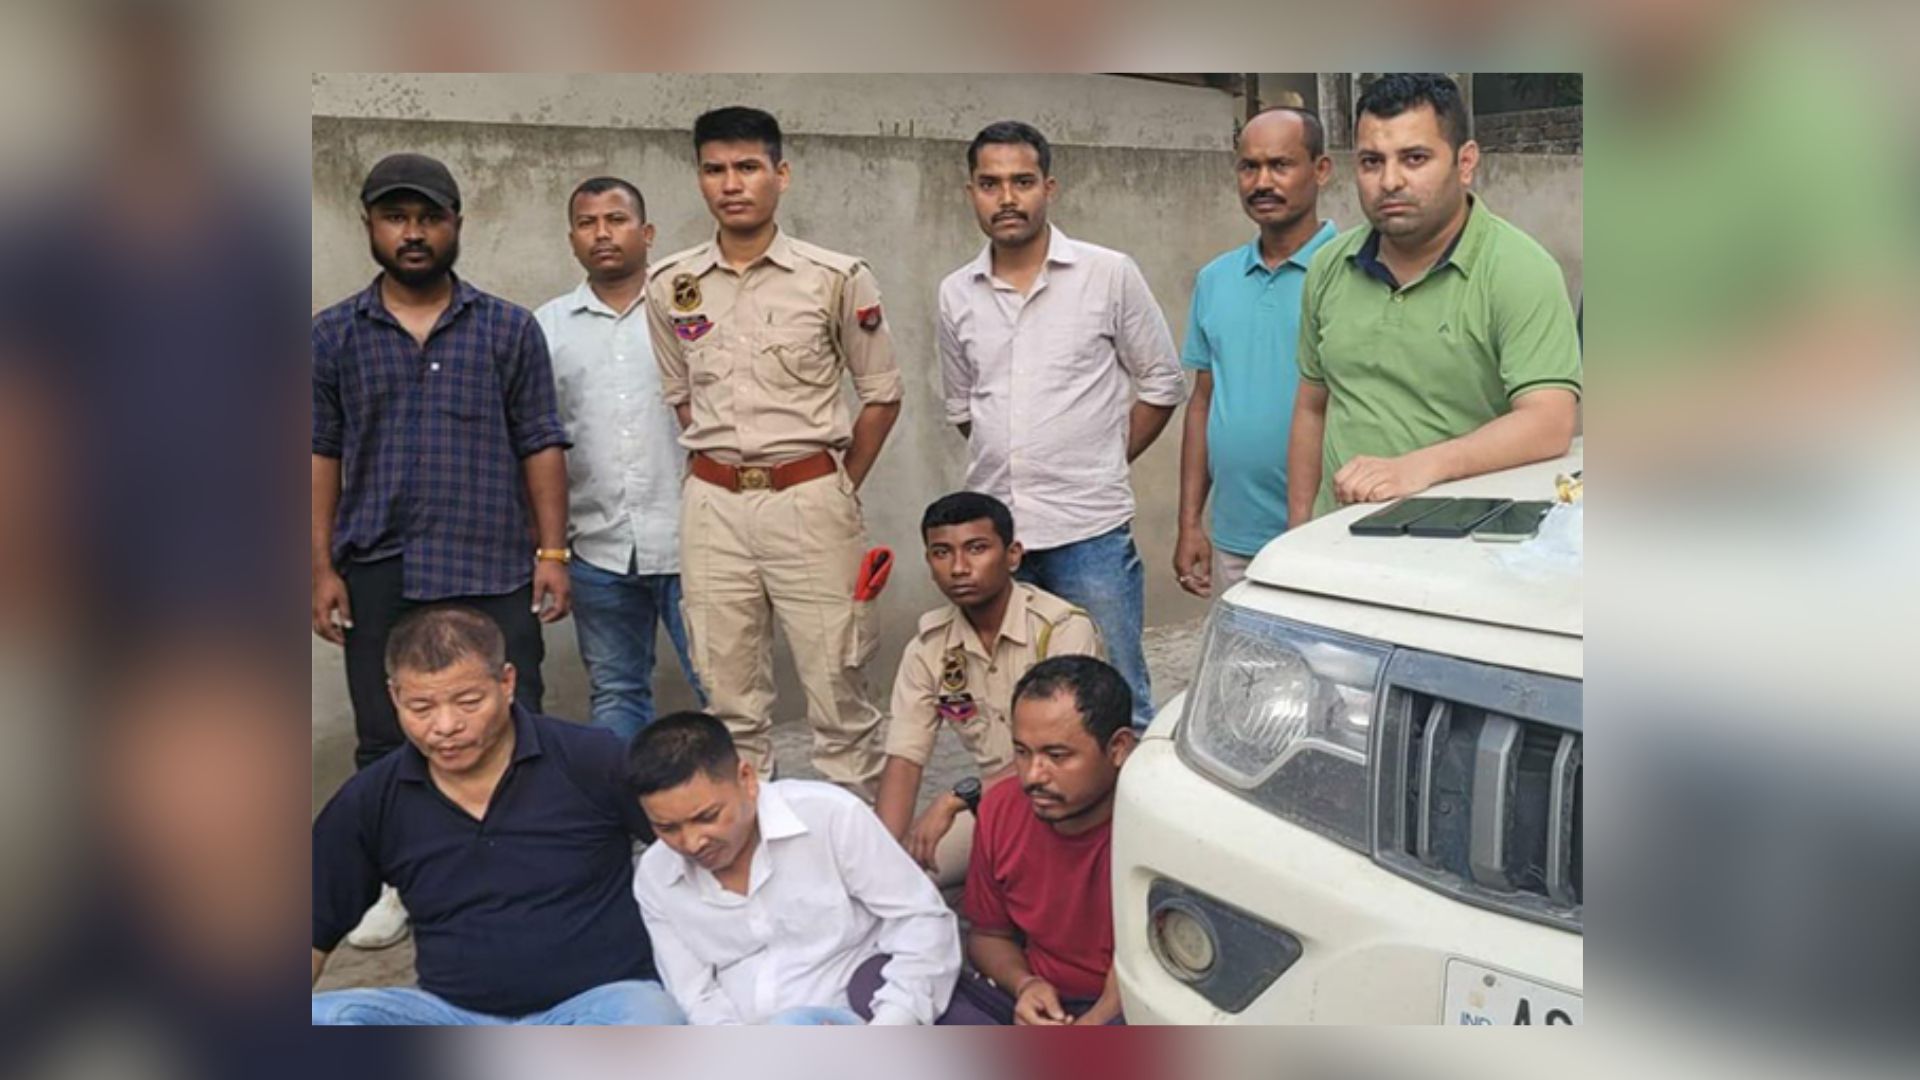 STF in Assam seizes 1 kg of heroin, 3 drug peddlers arrested